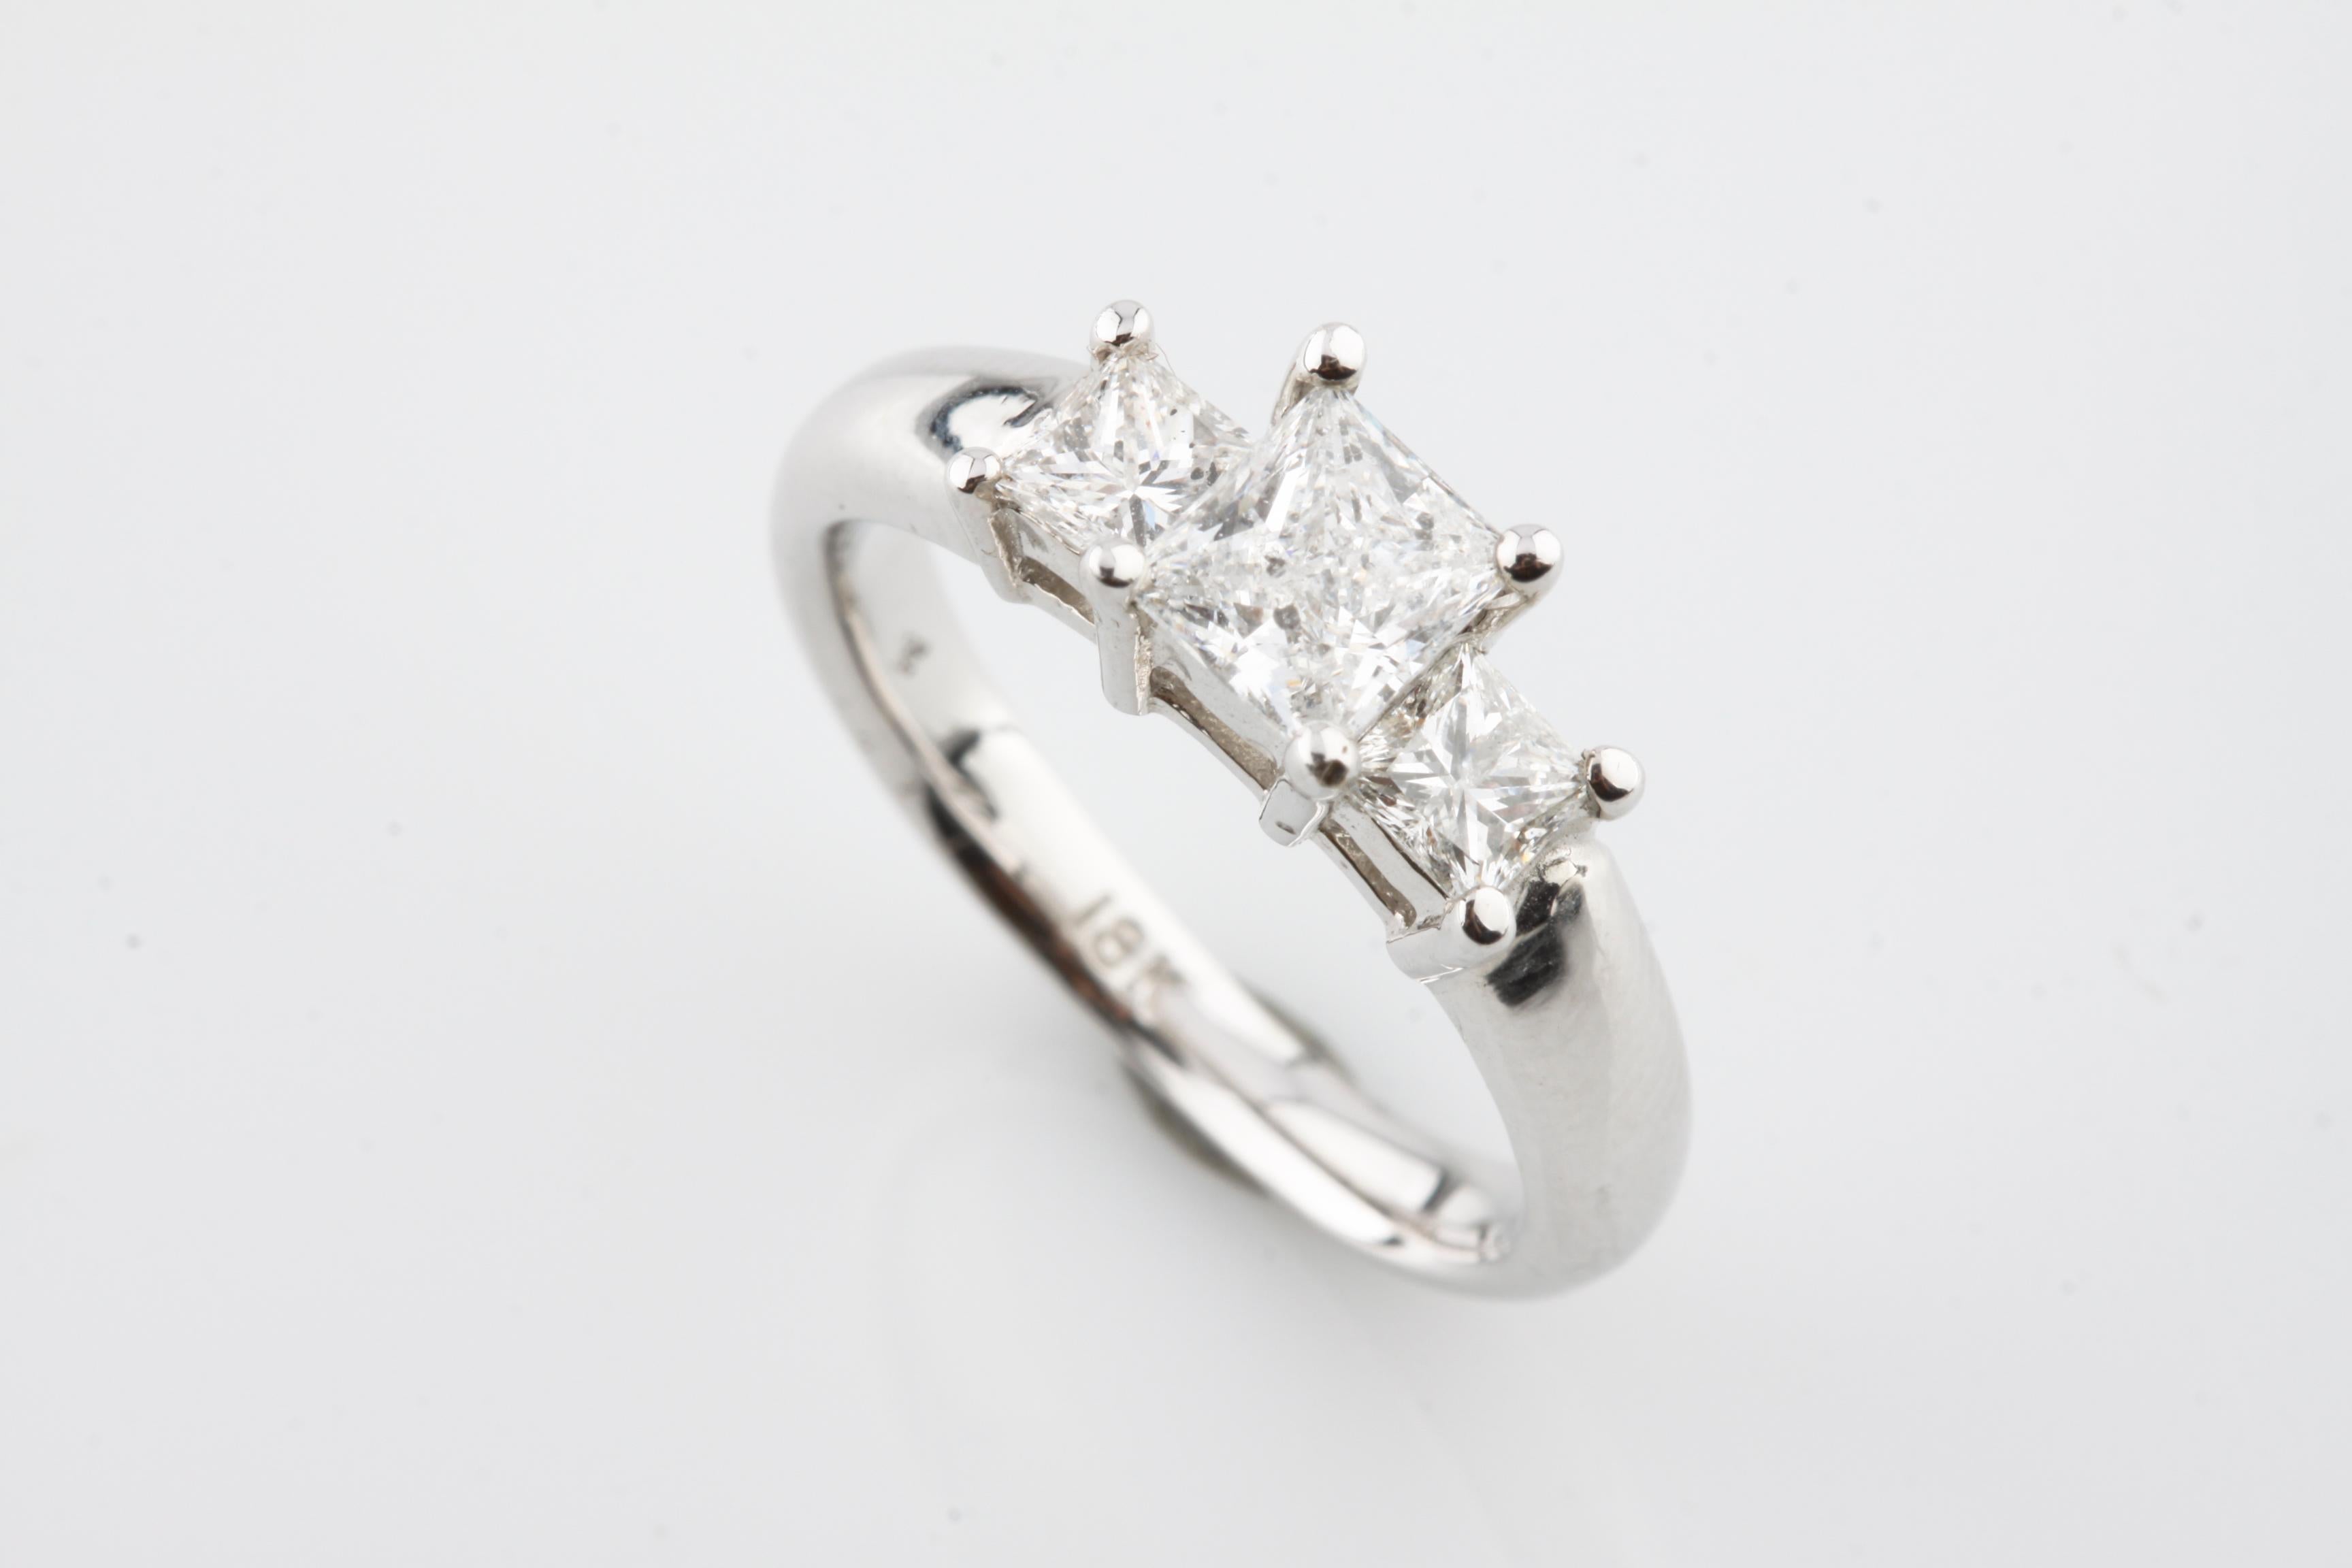 Eine elektronisch geprüfte 18KT Weißgold Damen gegossen Diamant Einheit Ring mit glänzenden Oberfläche.
Der Zustand ist gut.
Mit der Kennzeichnung 